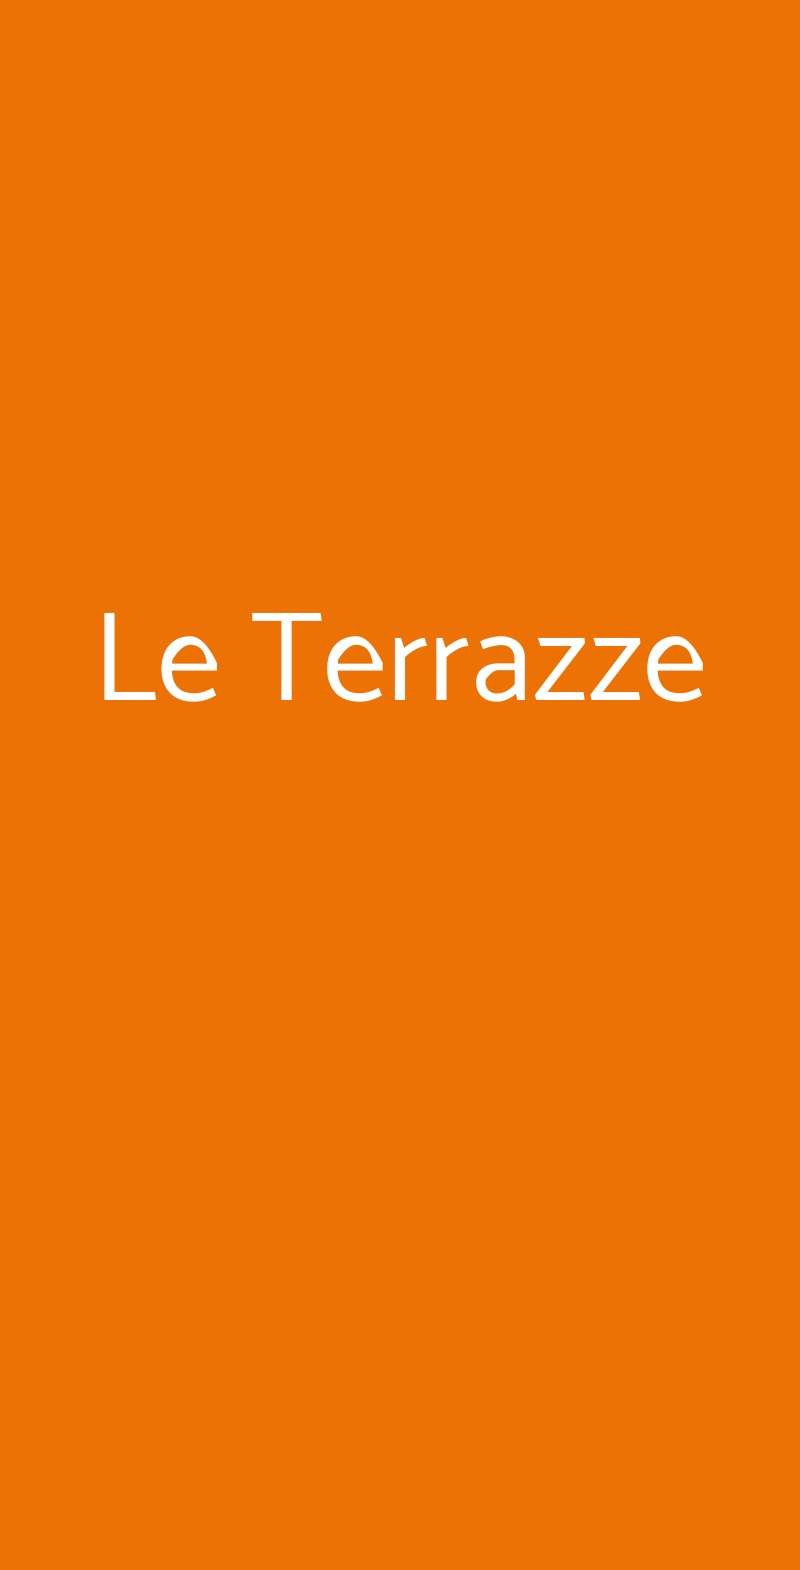 Le Terrazze Trieste menù 1 pagina